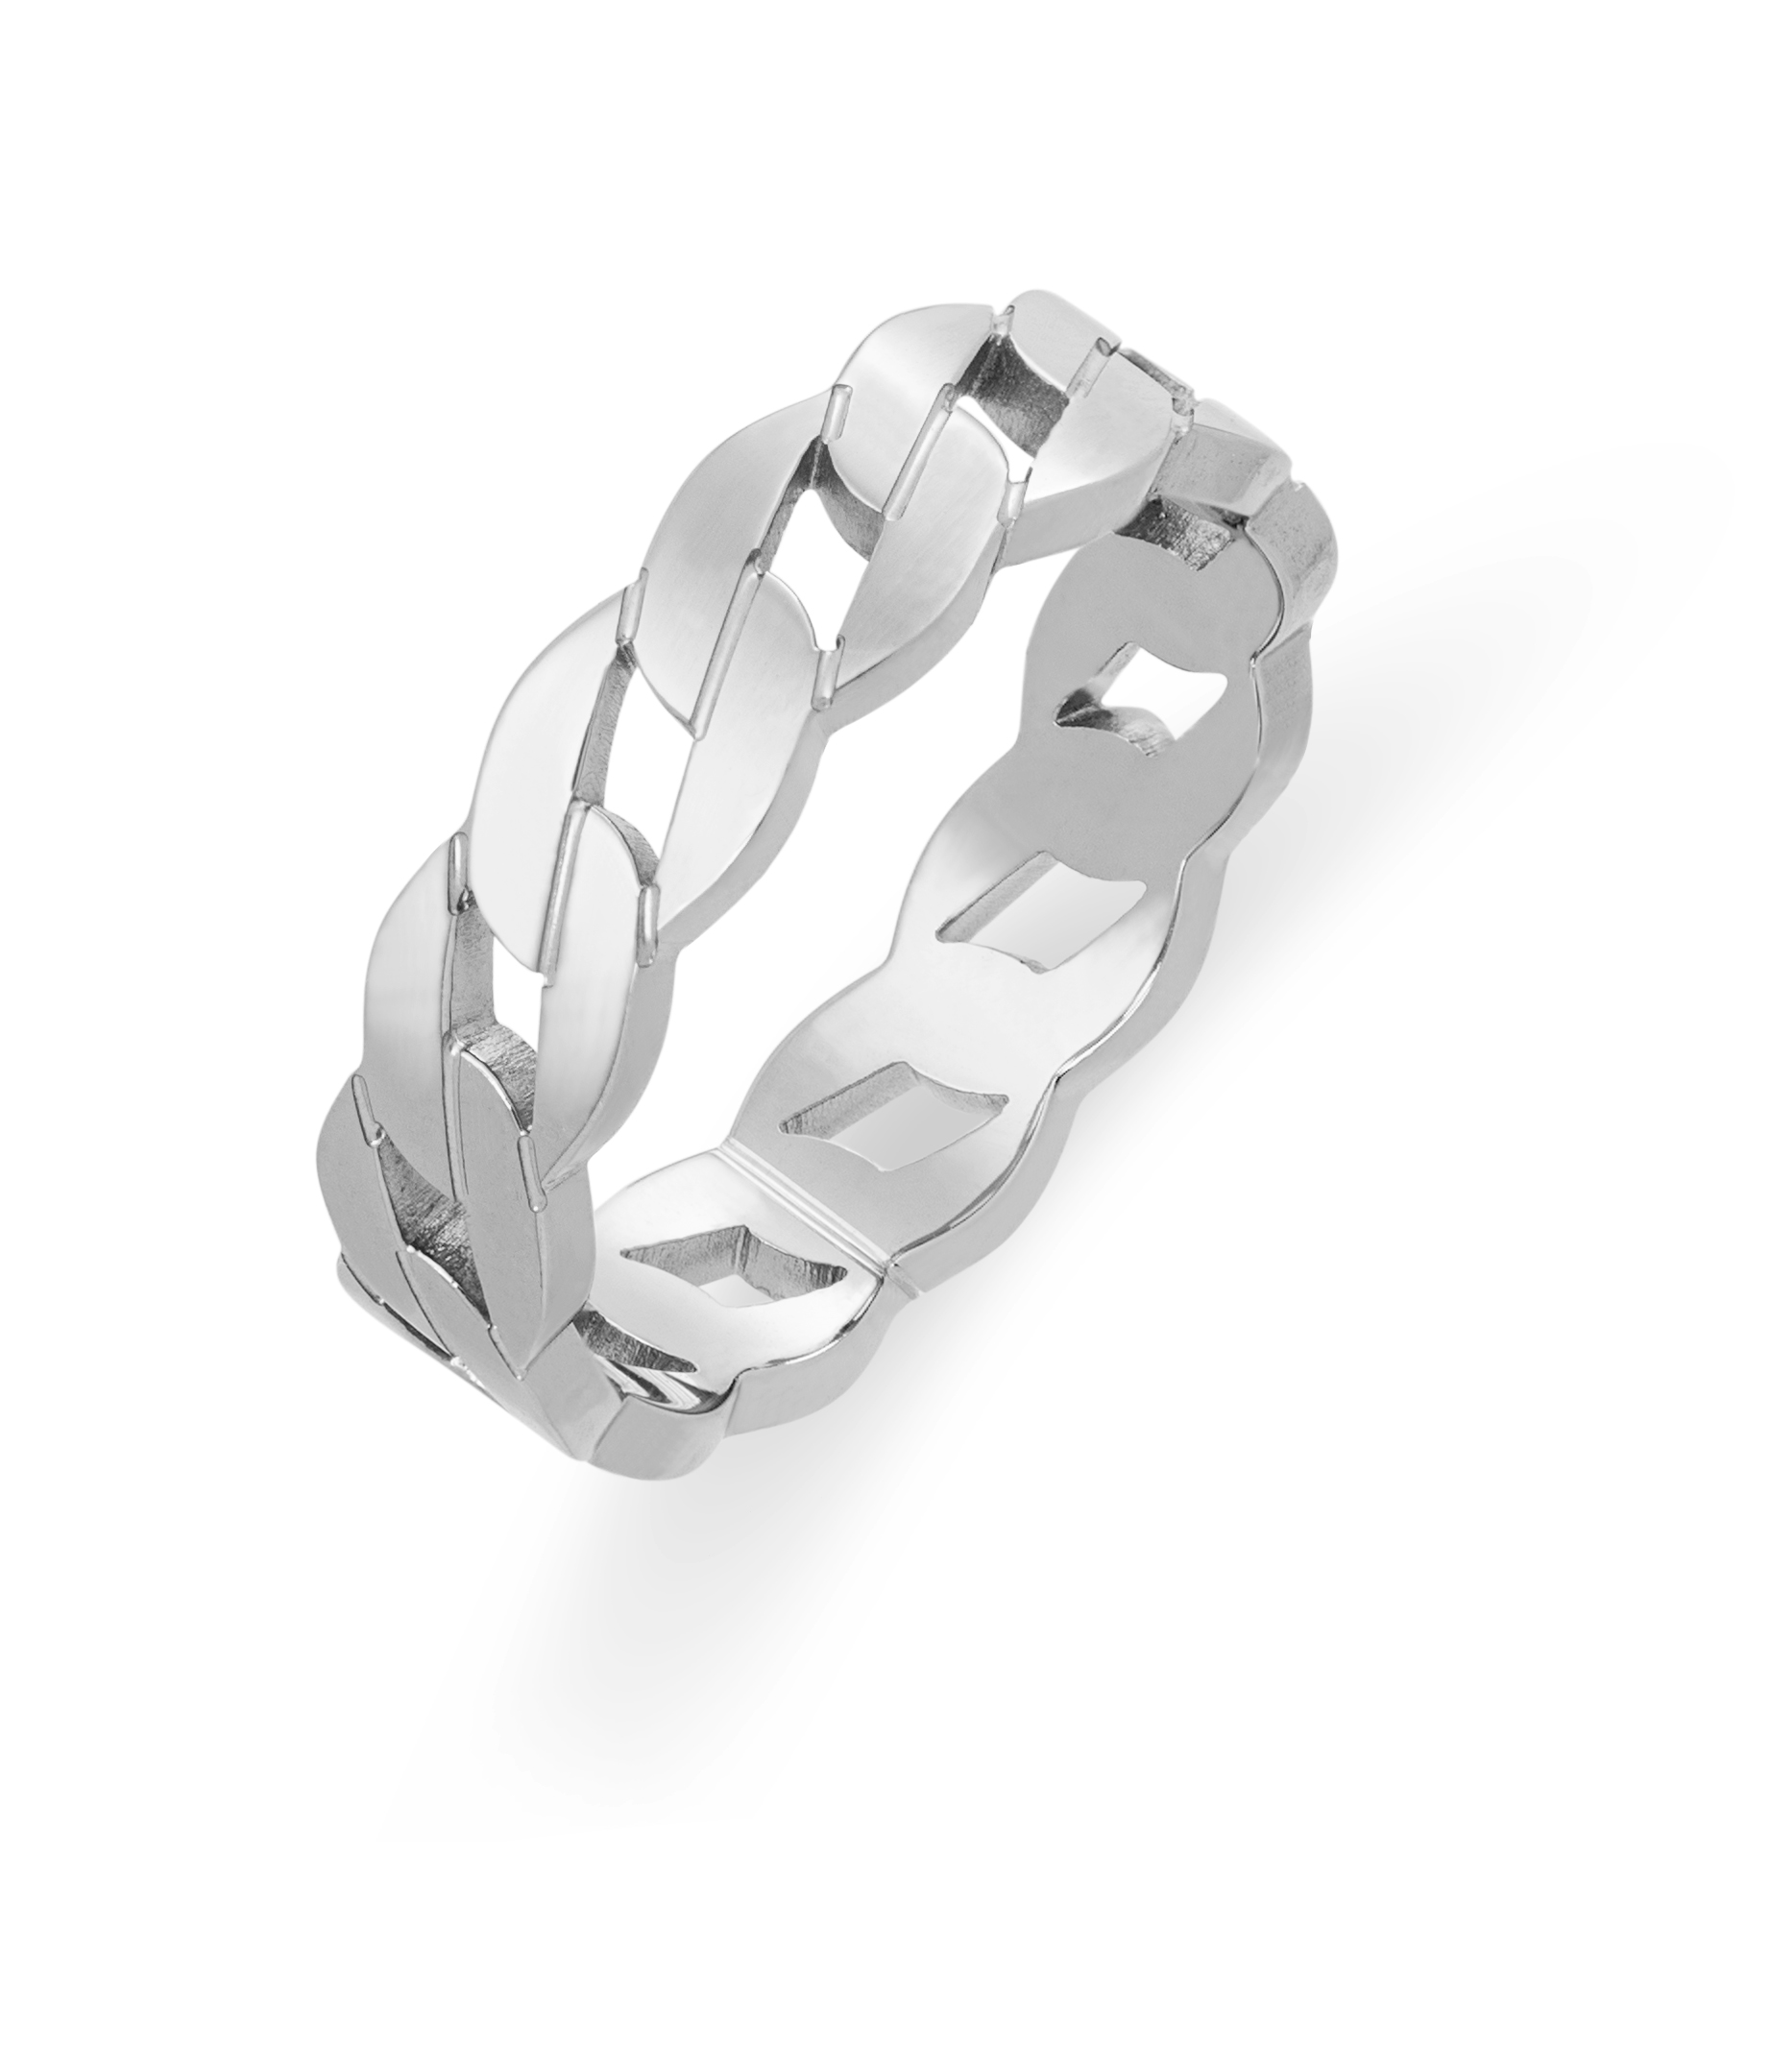 Troli Stylový ocelový prsten 56 mm